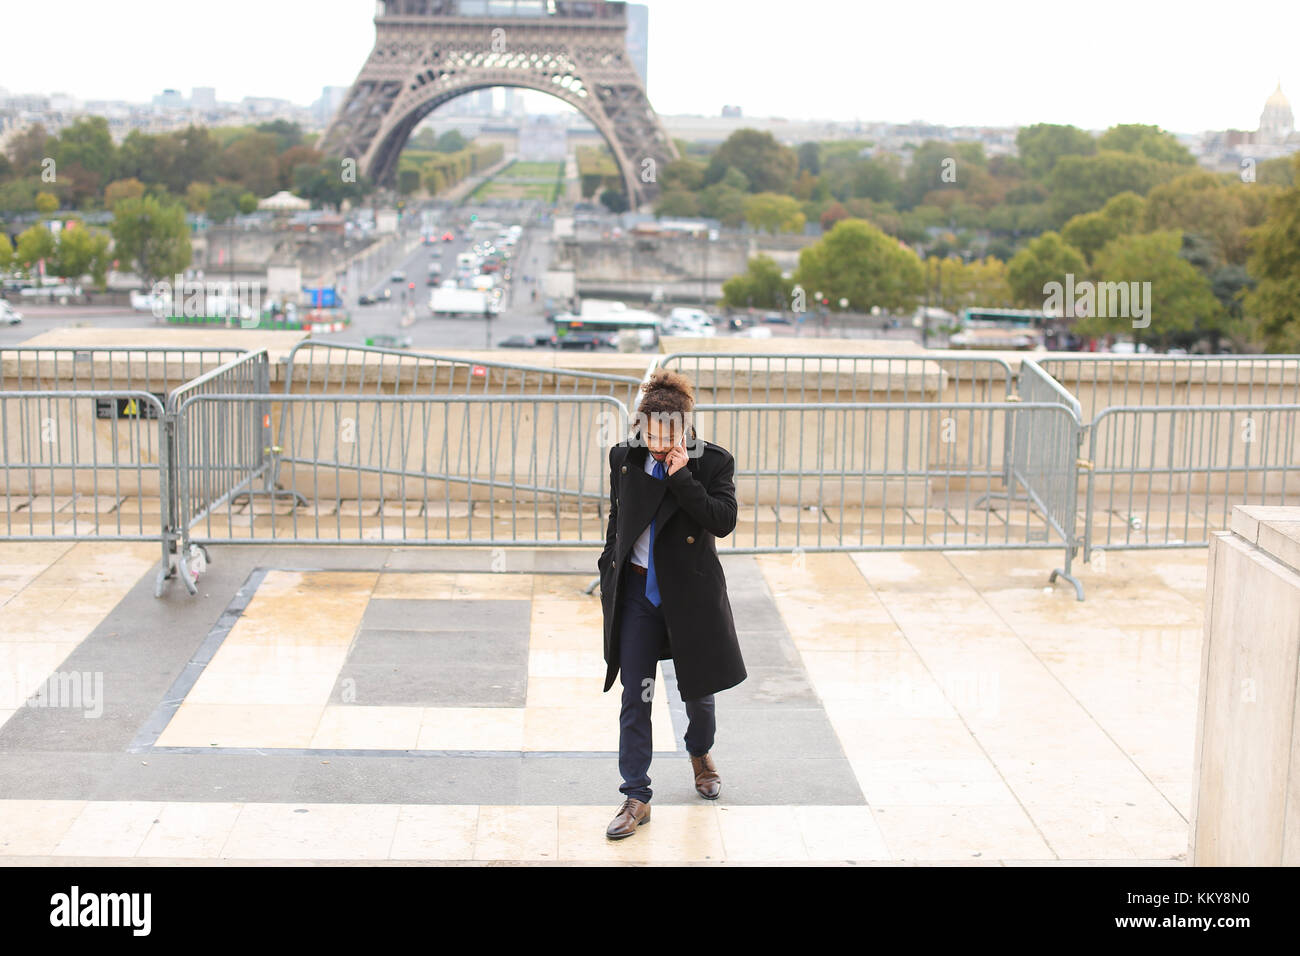 Brasilianische boy Chatten mit europäischen Freunden in der Nähe von Eiffelturm auf dem Smartphone. junger Mann im schwarzen Mantel bekleidet, hat earing, schwarzes lockiges Haar und Bart. Stockfoto